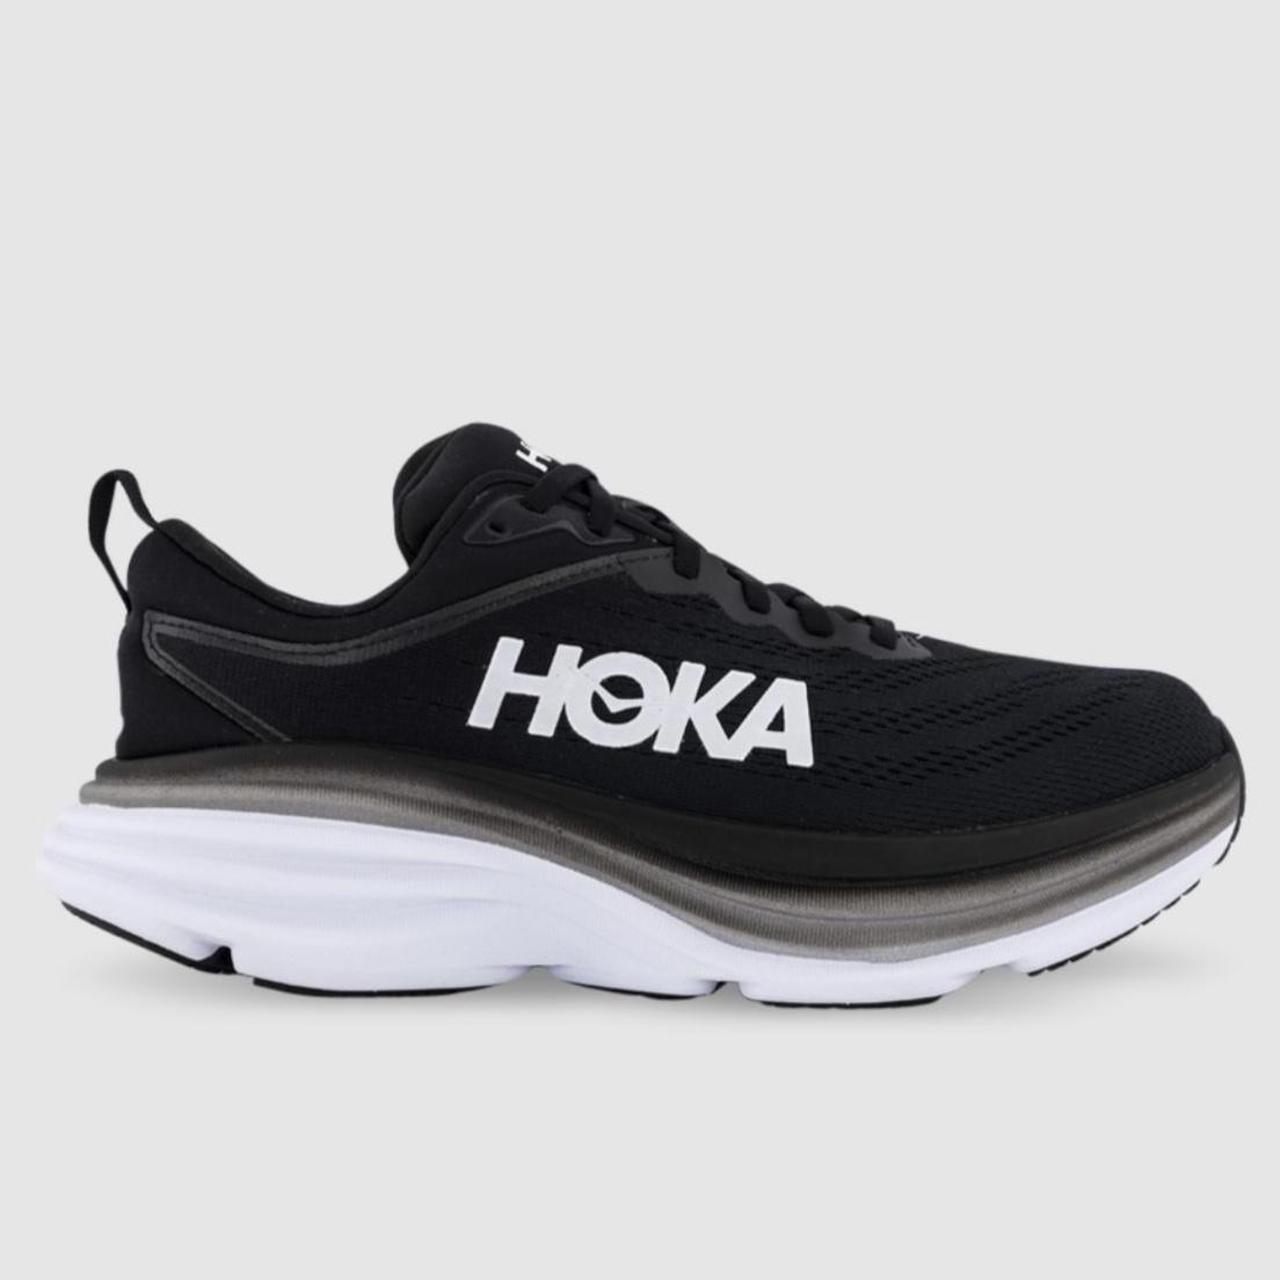 HOKA Bondi 8 - black and white Size US 10B Used but... - Depop